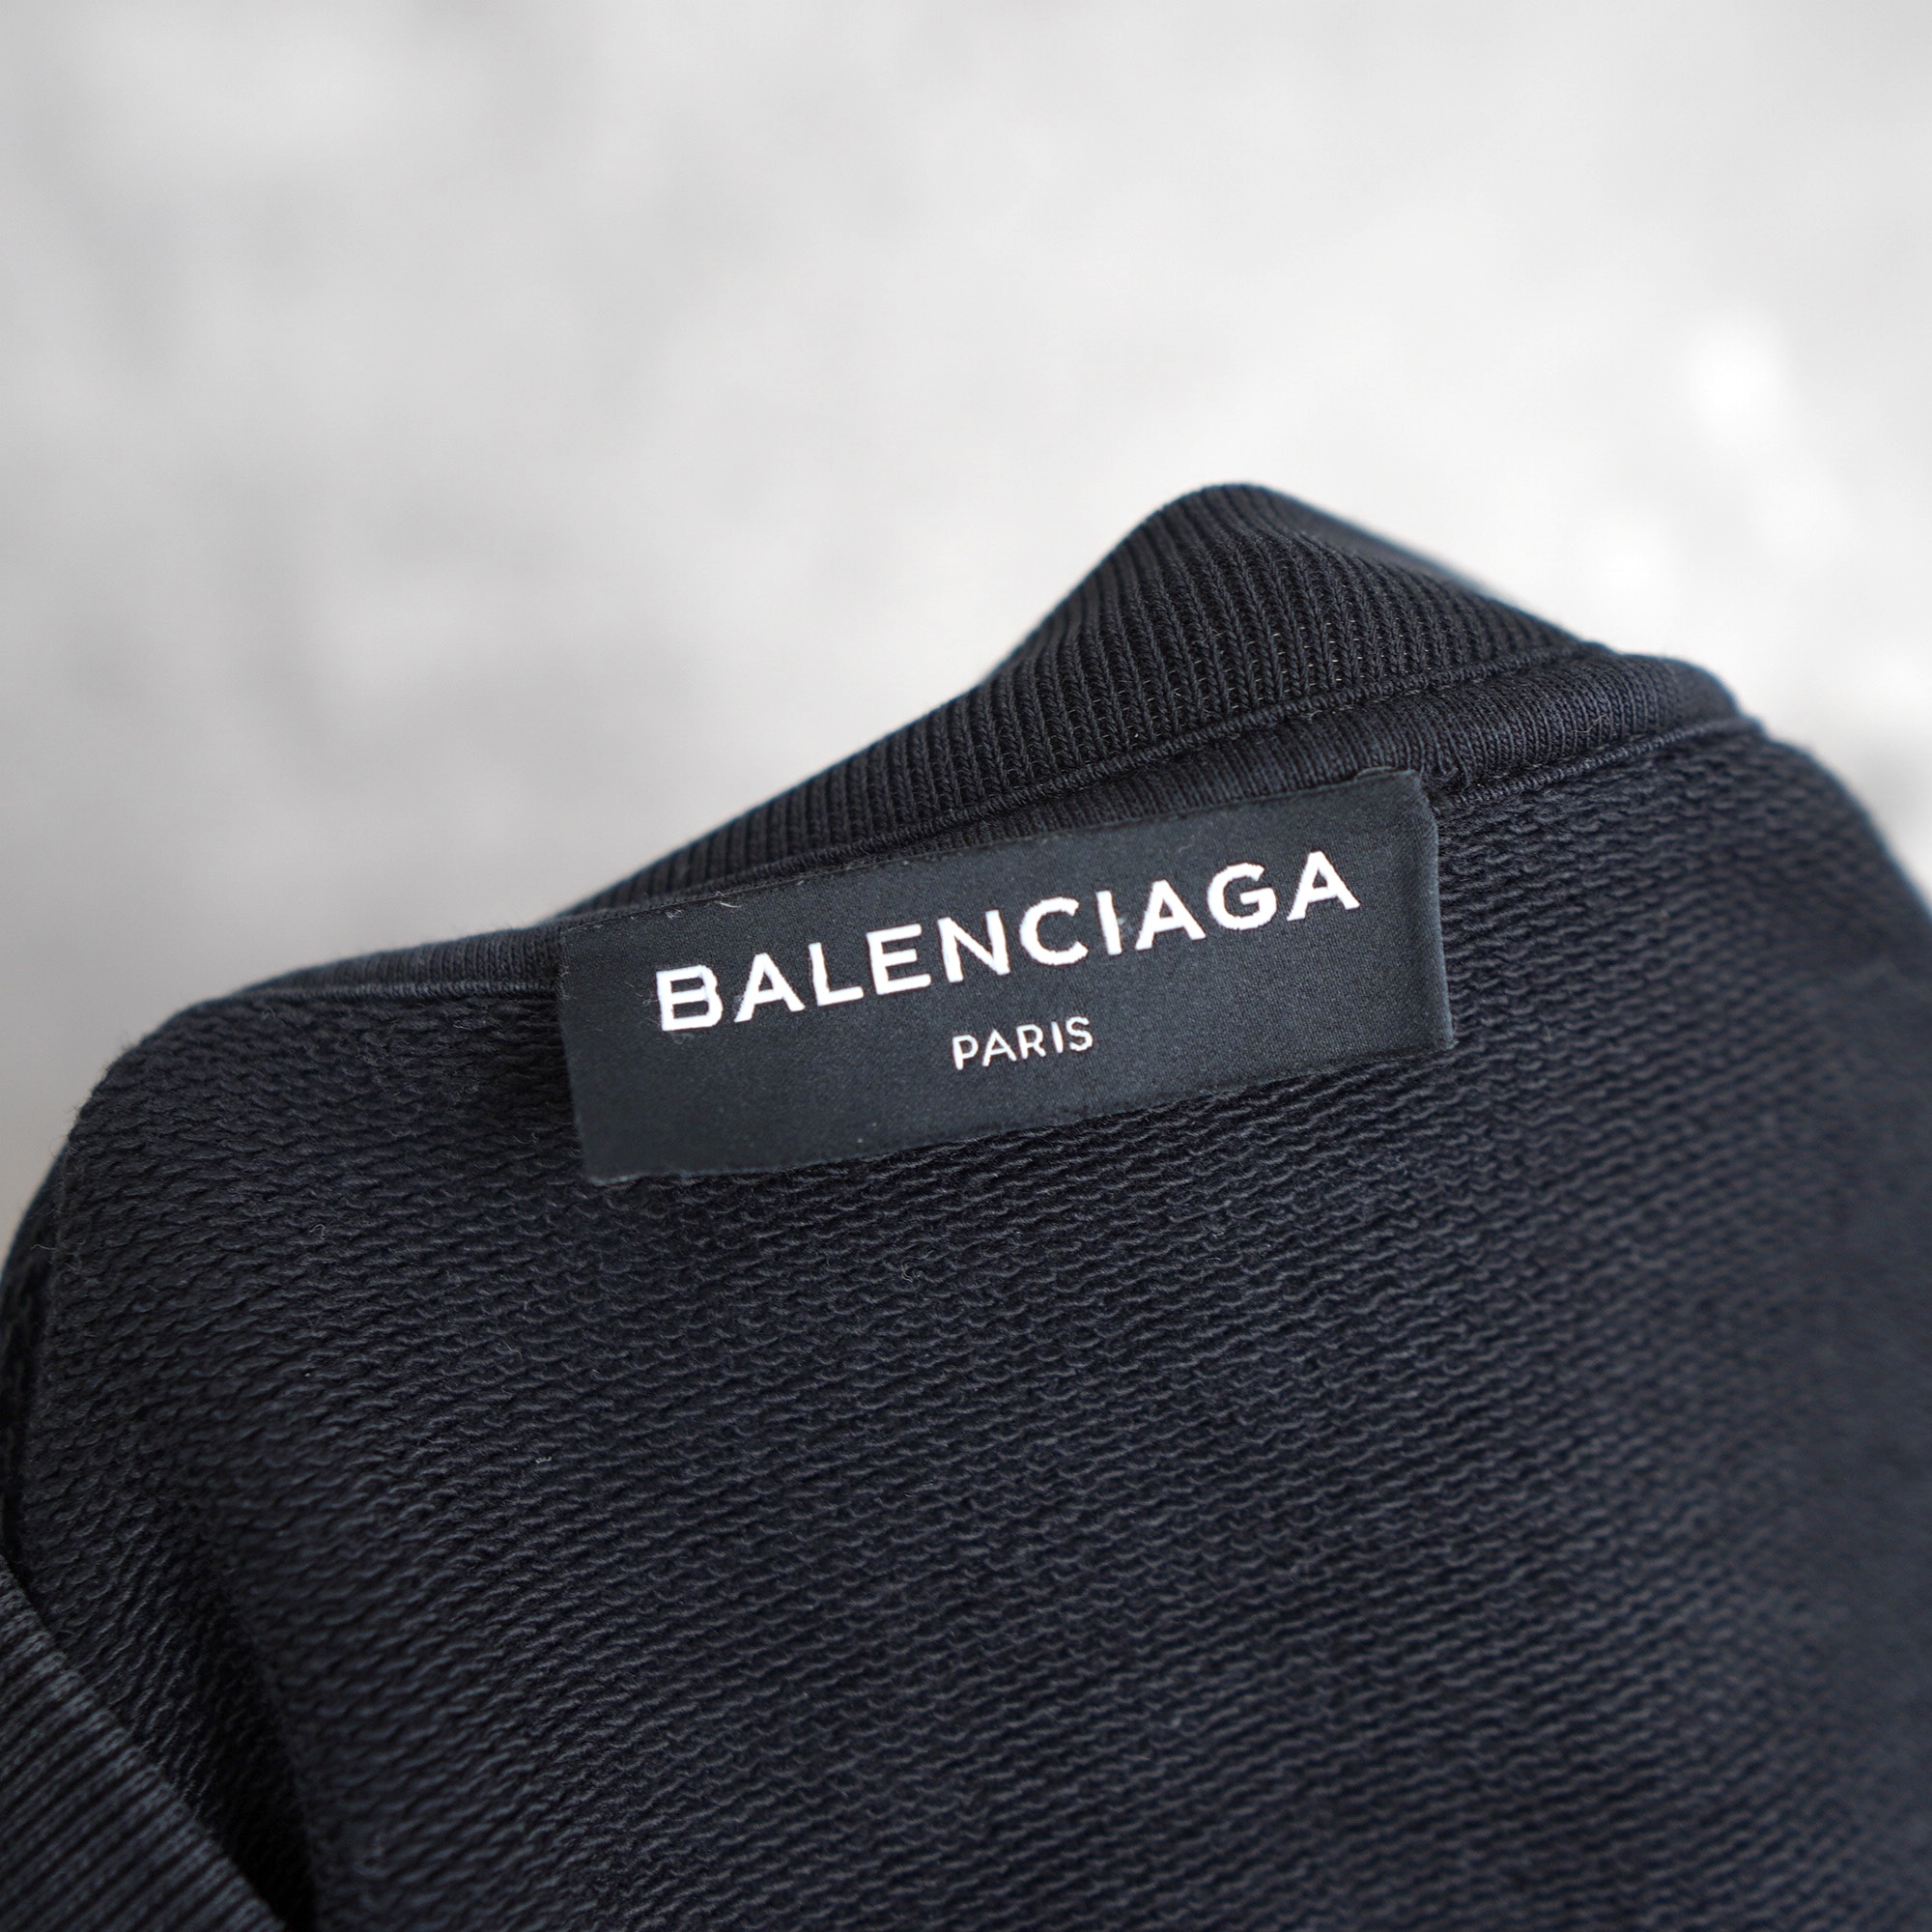 BALENCIAGA バレンシアガ スウェット トレーナー 17AW HOMME刺繍